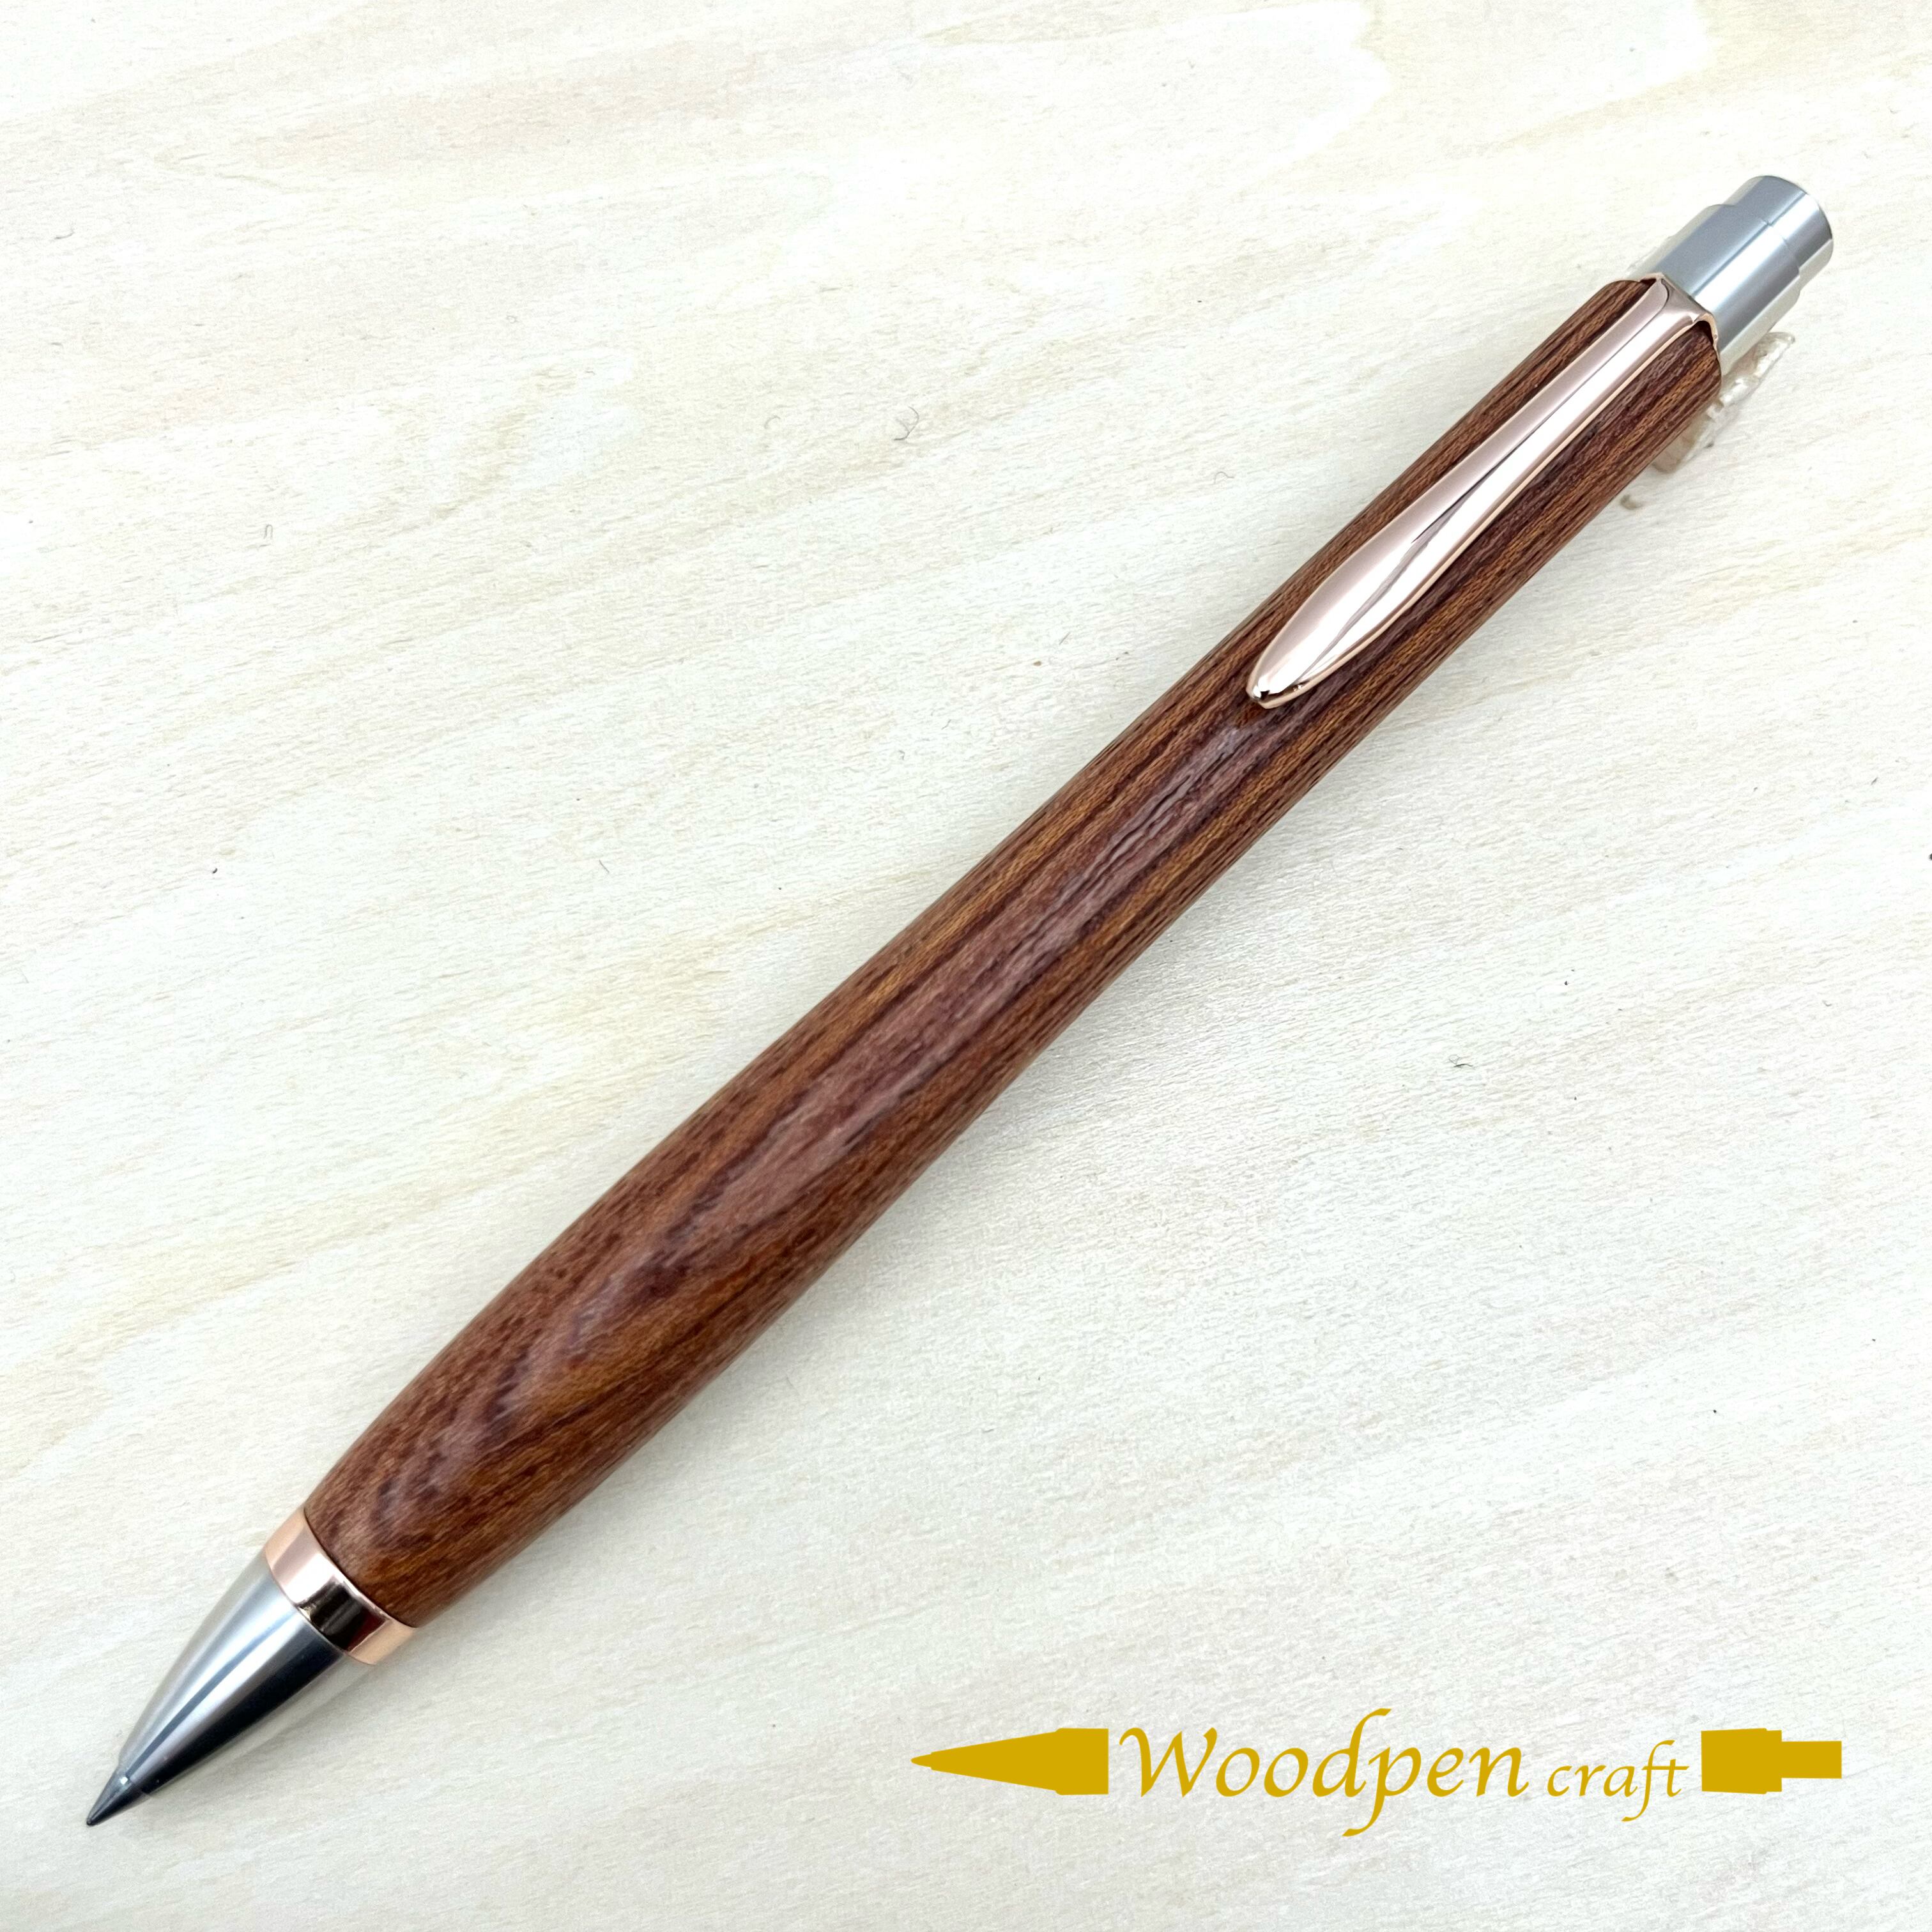 ボールペン woodpen craft 雷神欅 - 筆記具